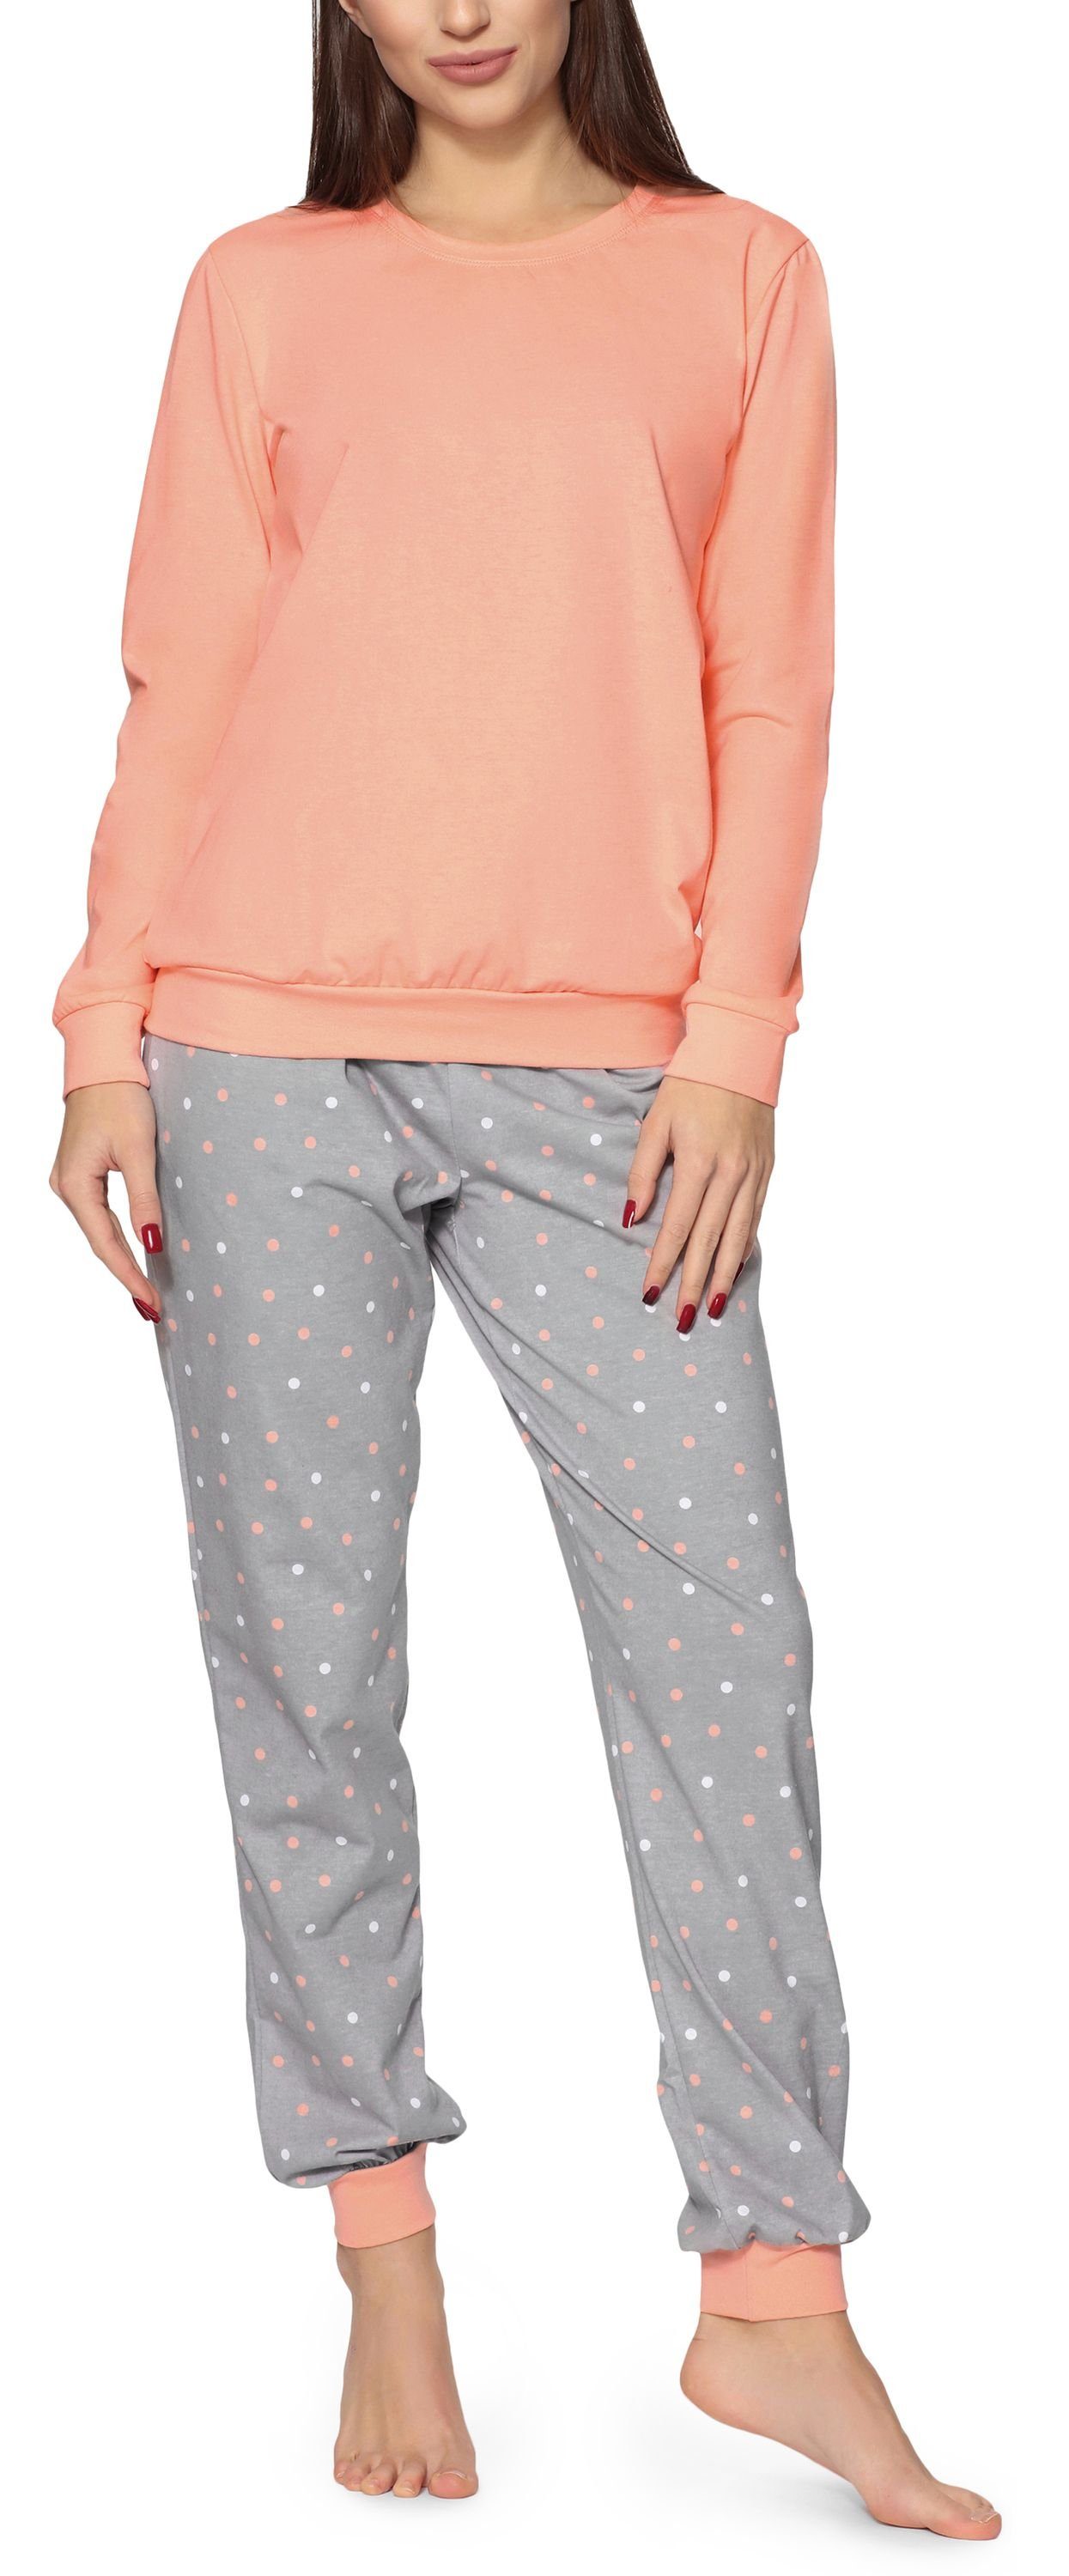 Merry Style Schlafanzug Damen Schlafanzug Zweiteiler Pyjama lang bunt mit Muster MS10-268 Lachs/Grau